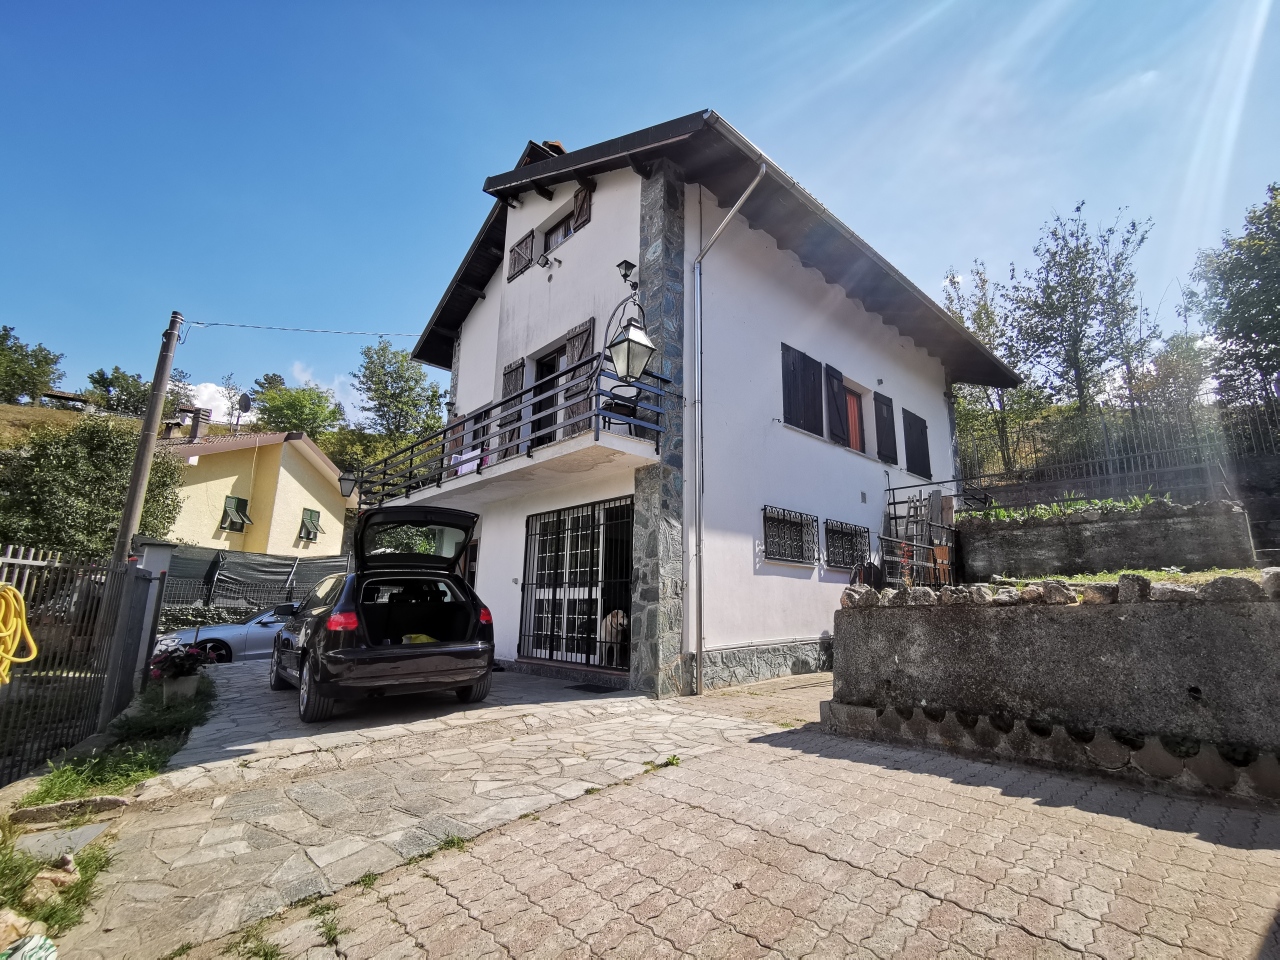 Villa in vendita a Mioglia, 6 locali, prezzo € 110.000 | PortaleAgenzieImmobiliari.it